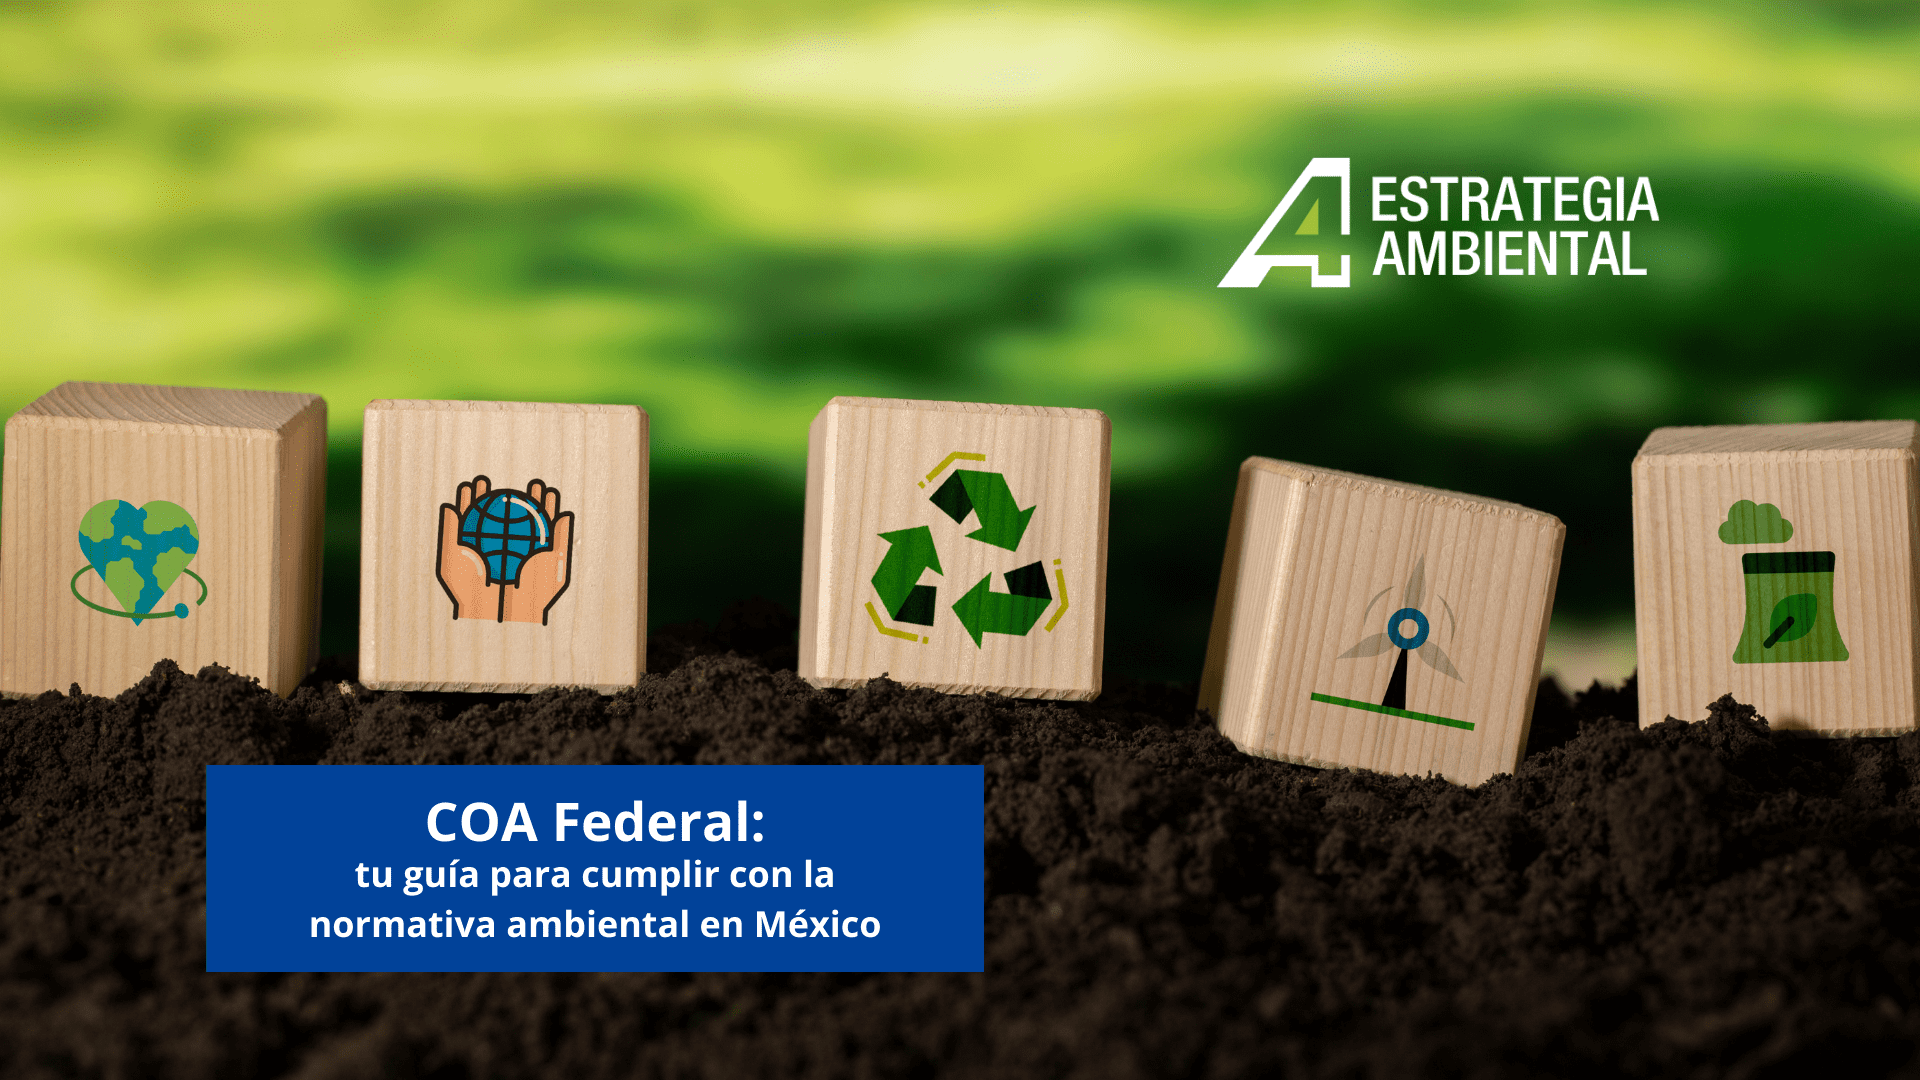 COA Federal: tu guía para cumplir con la normativa ambiental en México